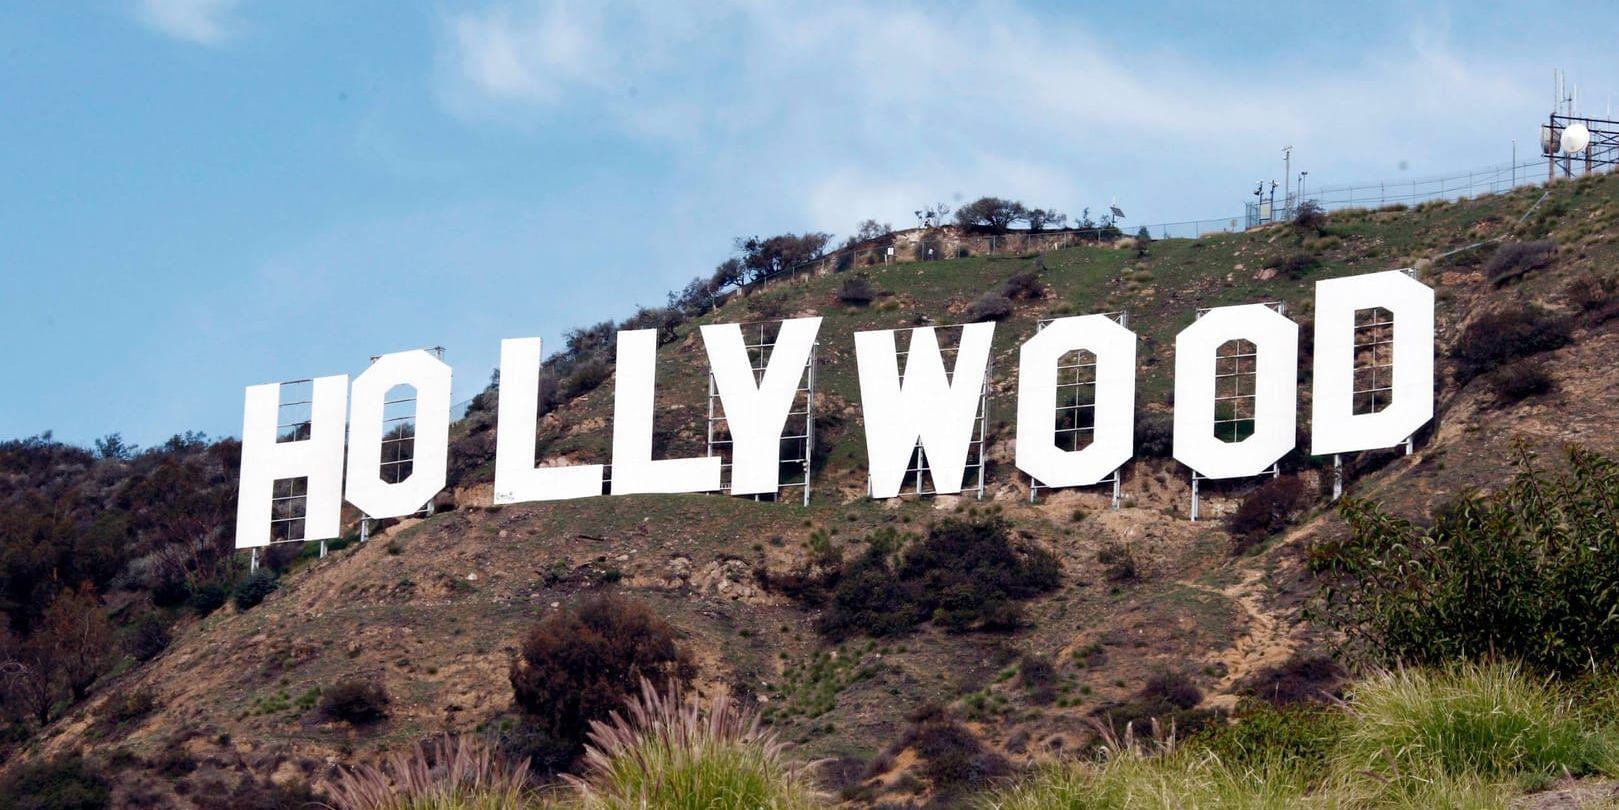 Hollywood brister fortfarande i mångfald visar en ny rapport. Arkivbild.